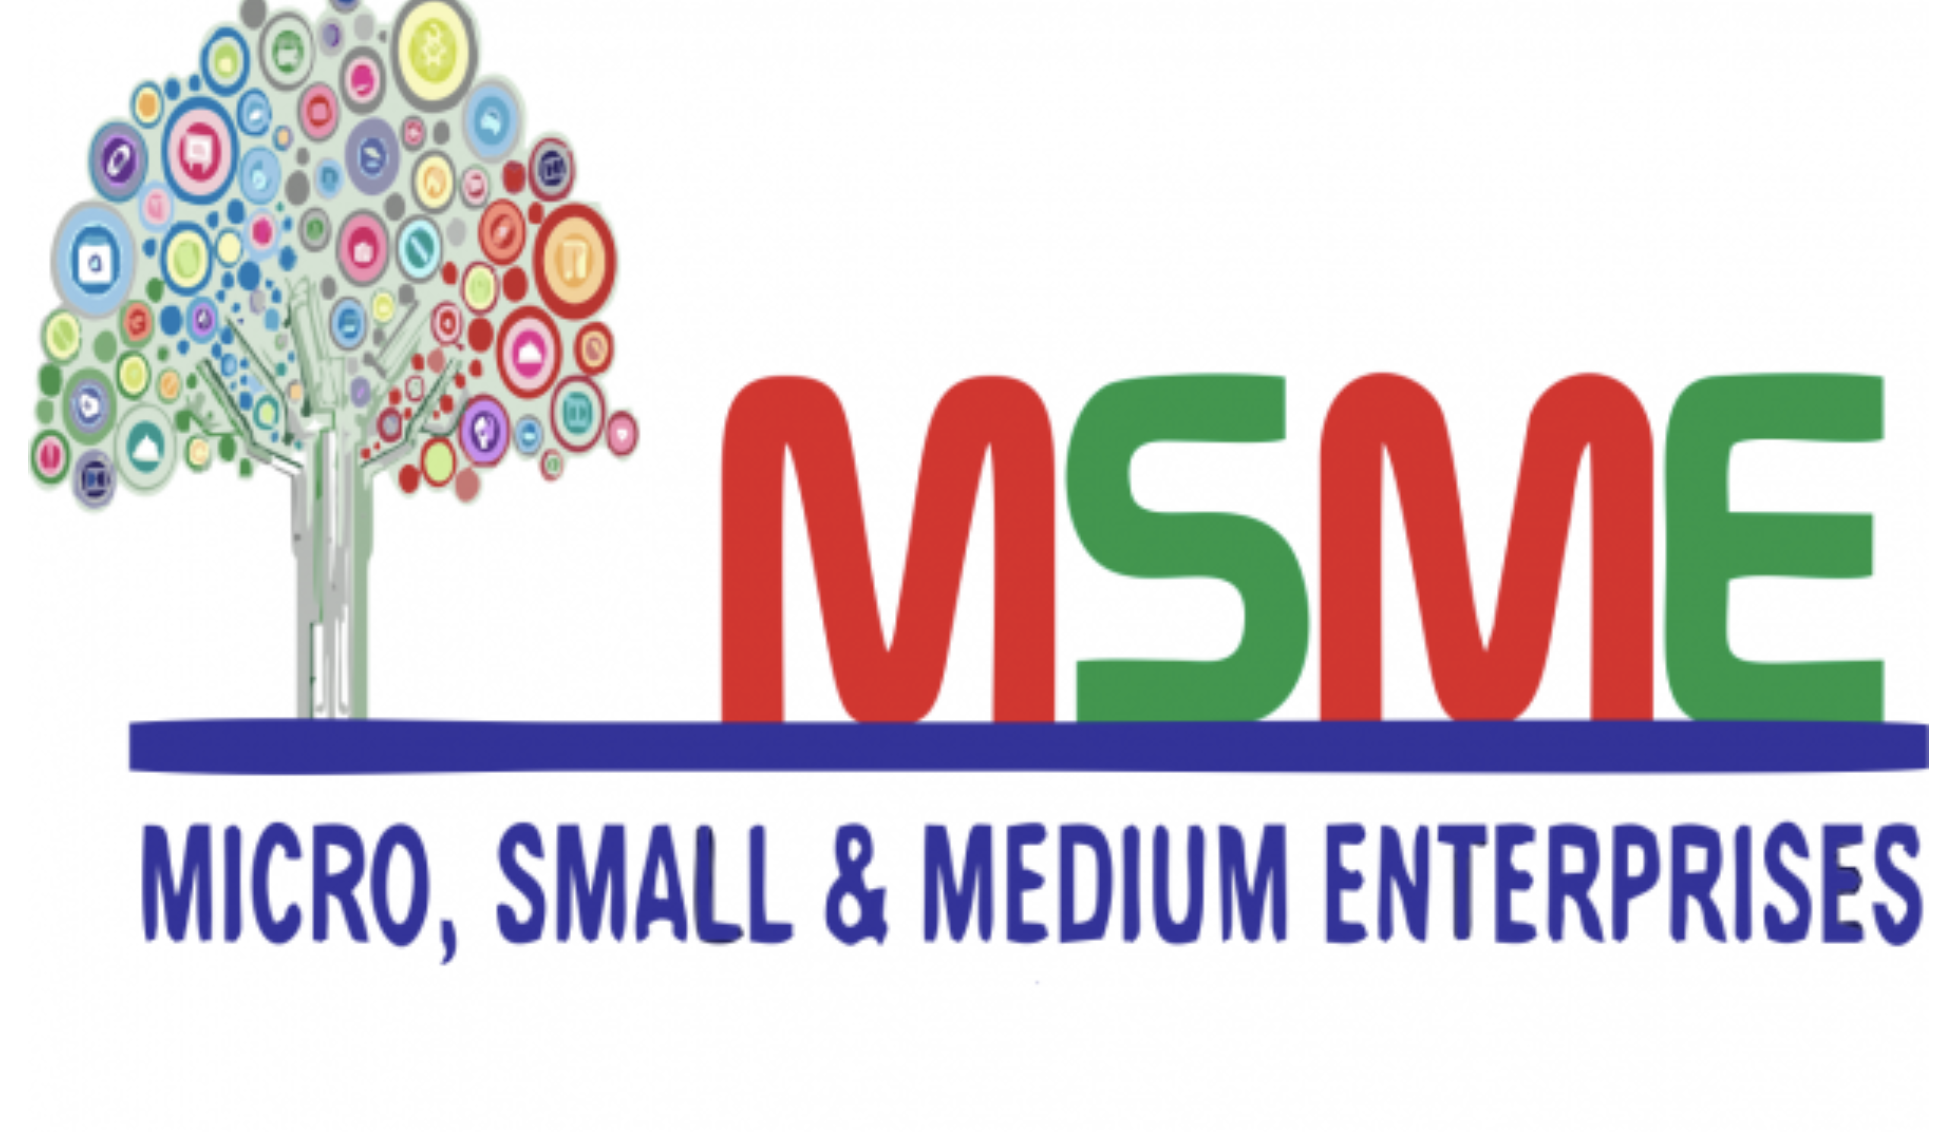 MSME का क्या अर्थ है? एमएसएमई की नई परिभाषा और इसका अर्थव्यवस्था में प्रभाव